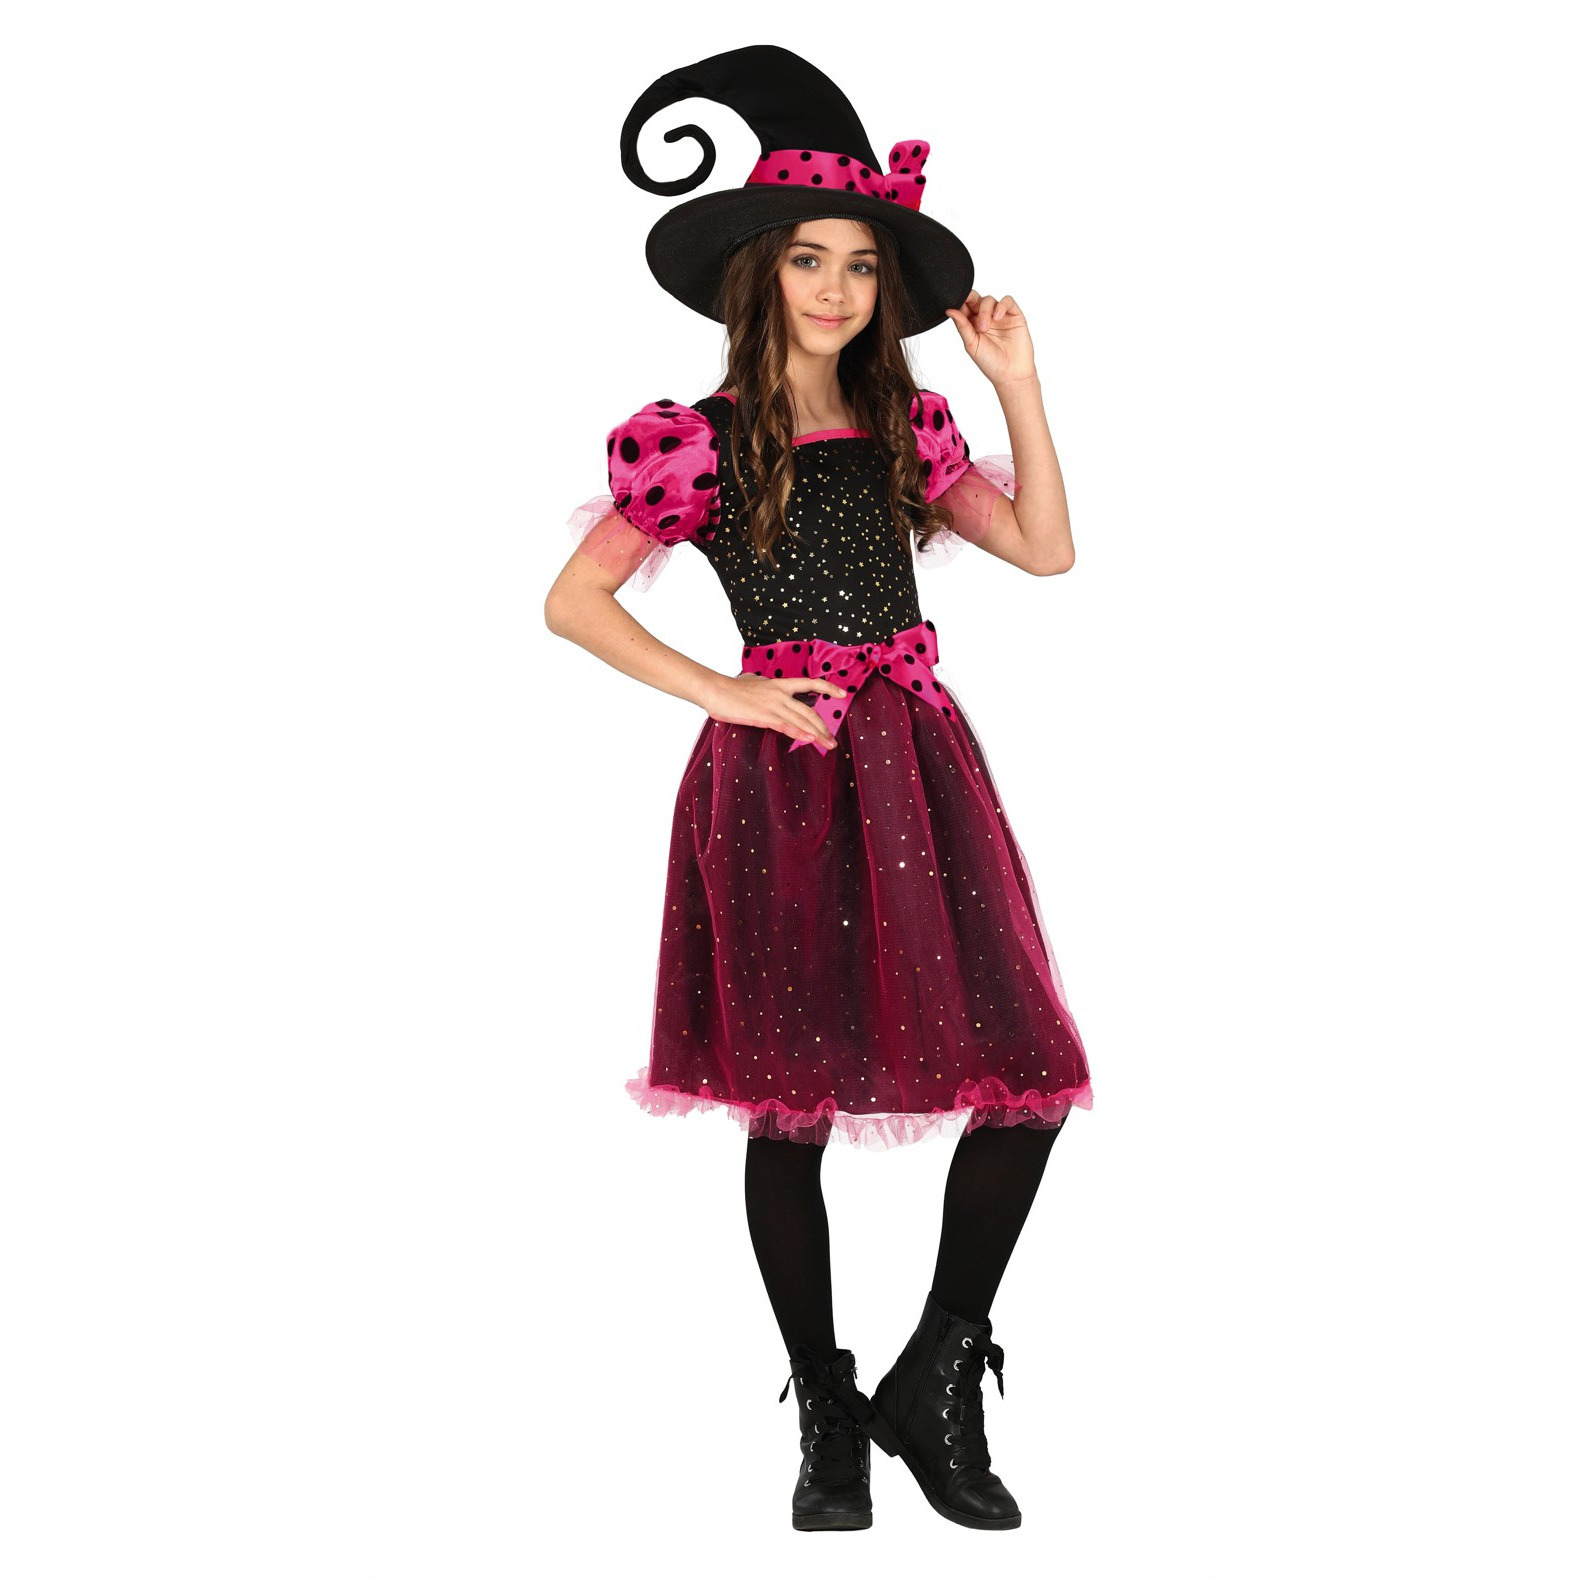 Halloween - Heksen verkleed kostuum zwart/roze voor meisjes